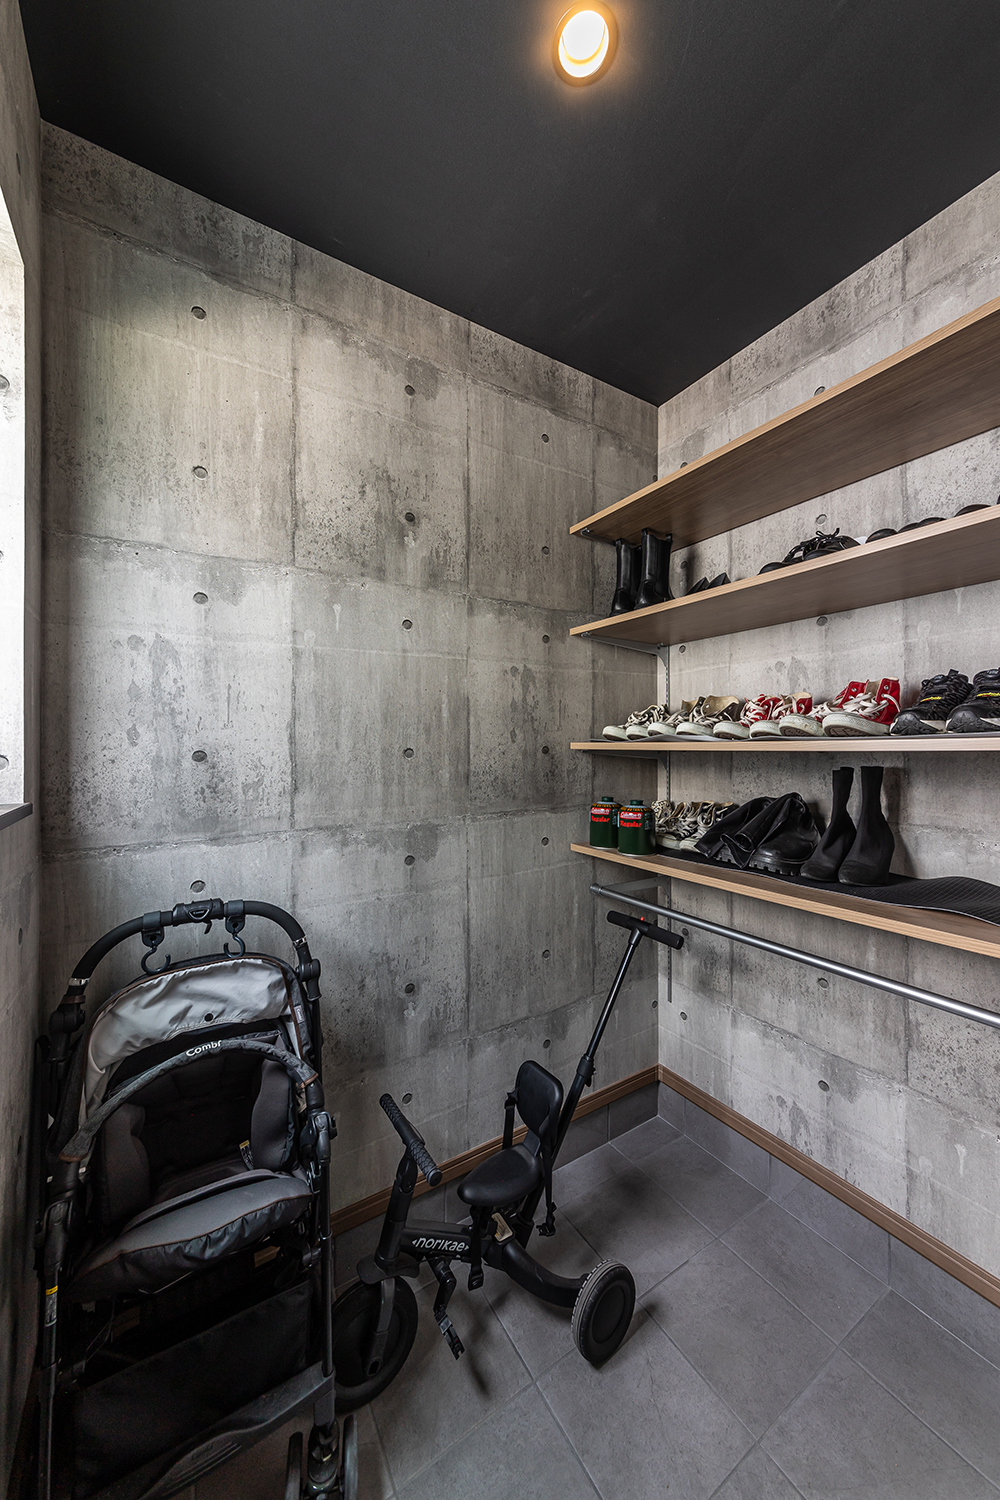 コンクリート調の壁紙が目を惹く玄関。<br />
玄関奥にある土間収納には、ベビーカーや三輪車の他、可動棚やハンガーパイプを利用し、靴や小物もたっぷりと収納できます。<br />
